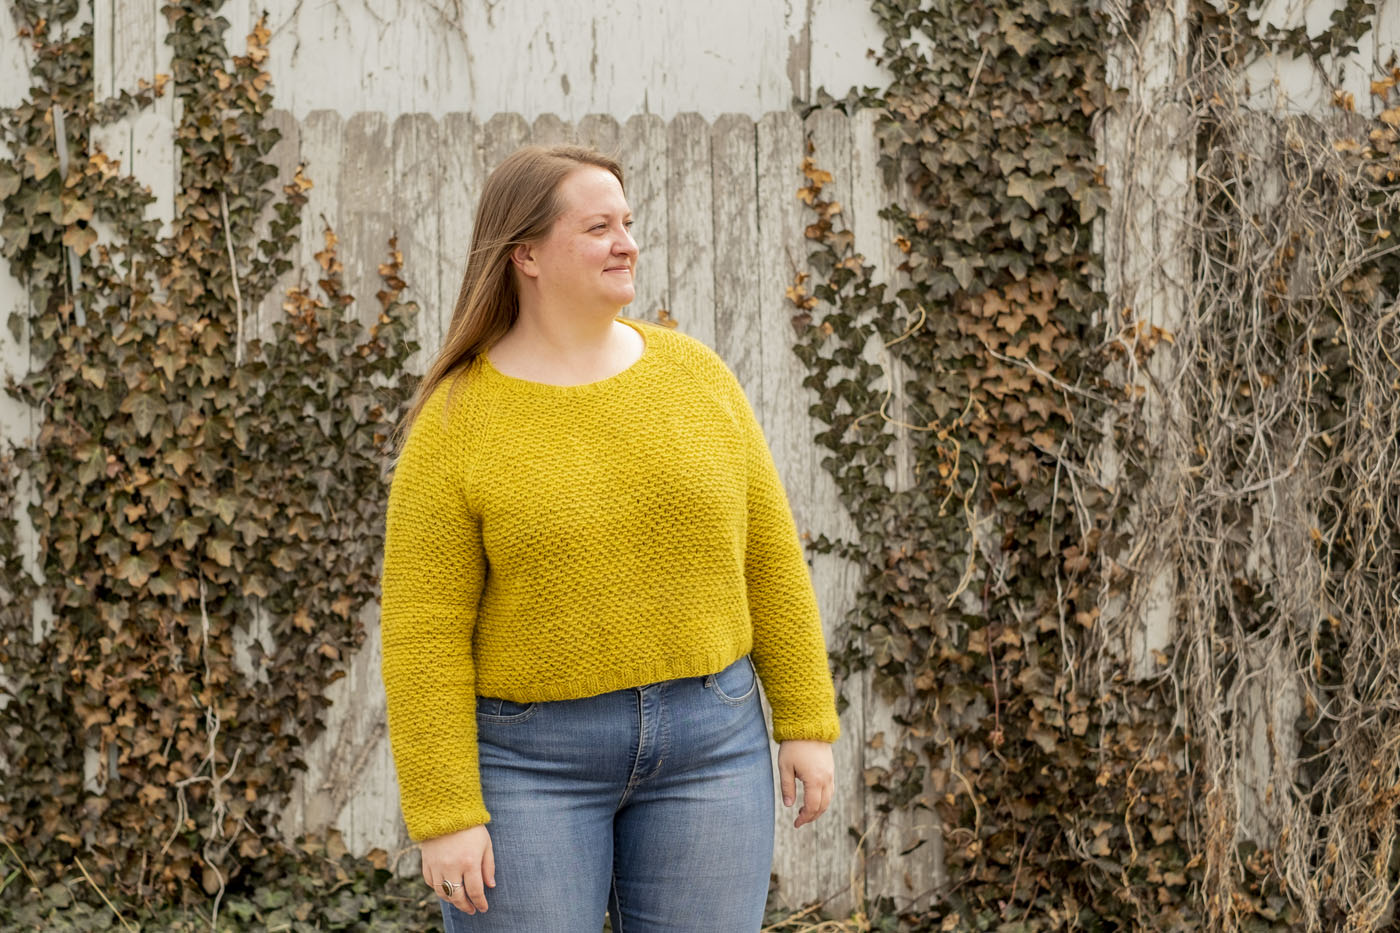 Shawna in her golden beet nurtured sweater